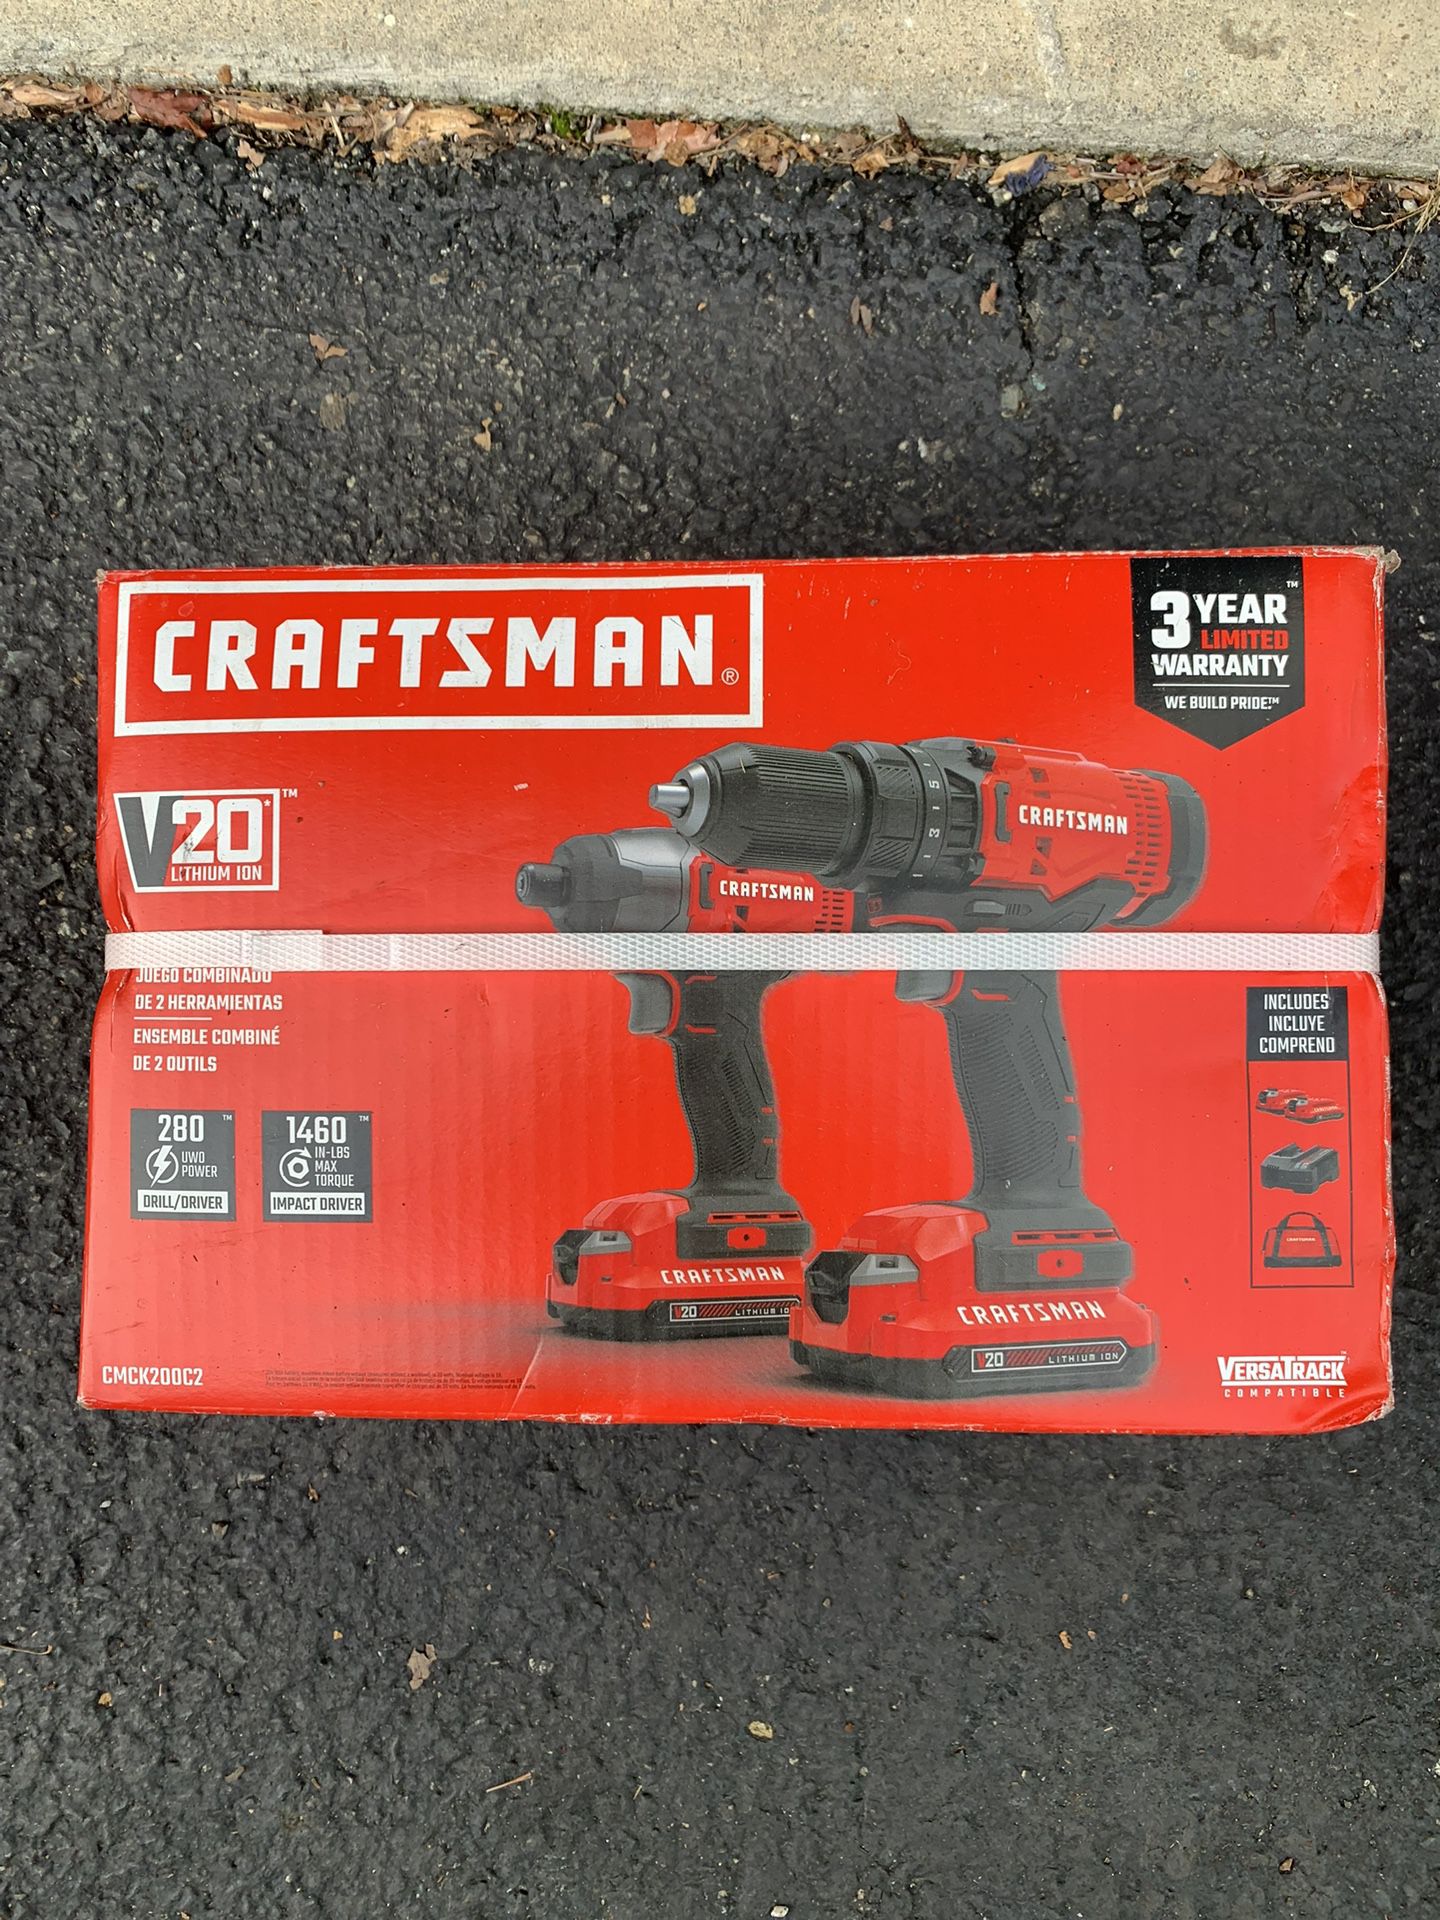  Craftsman V20 Drill